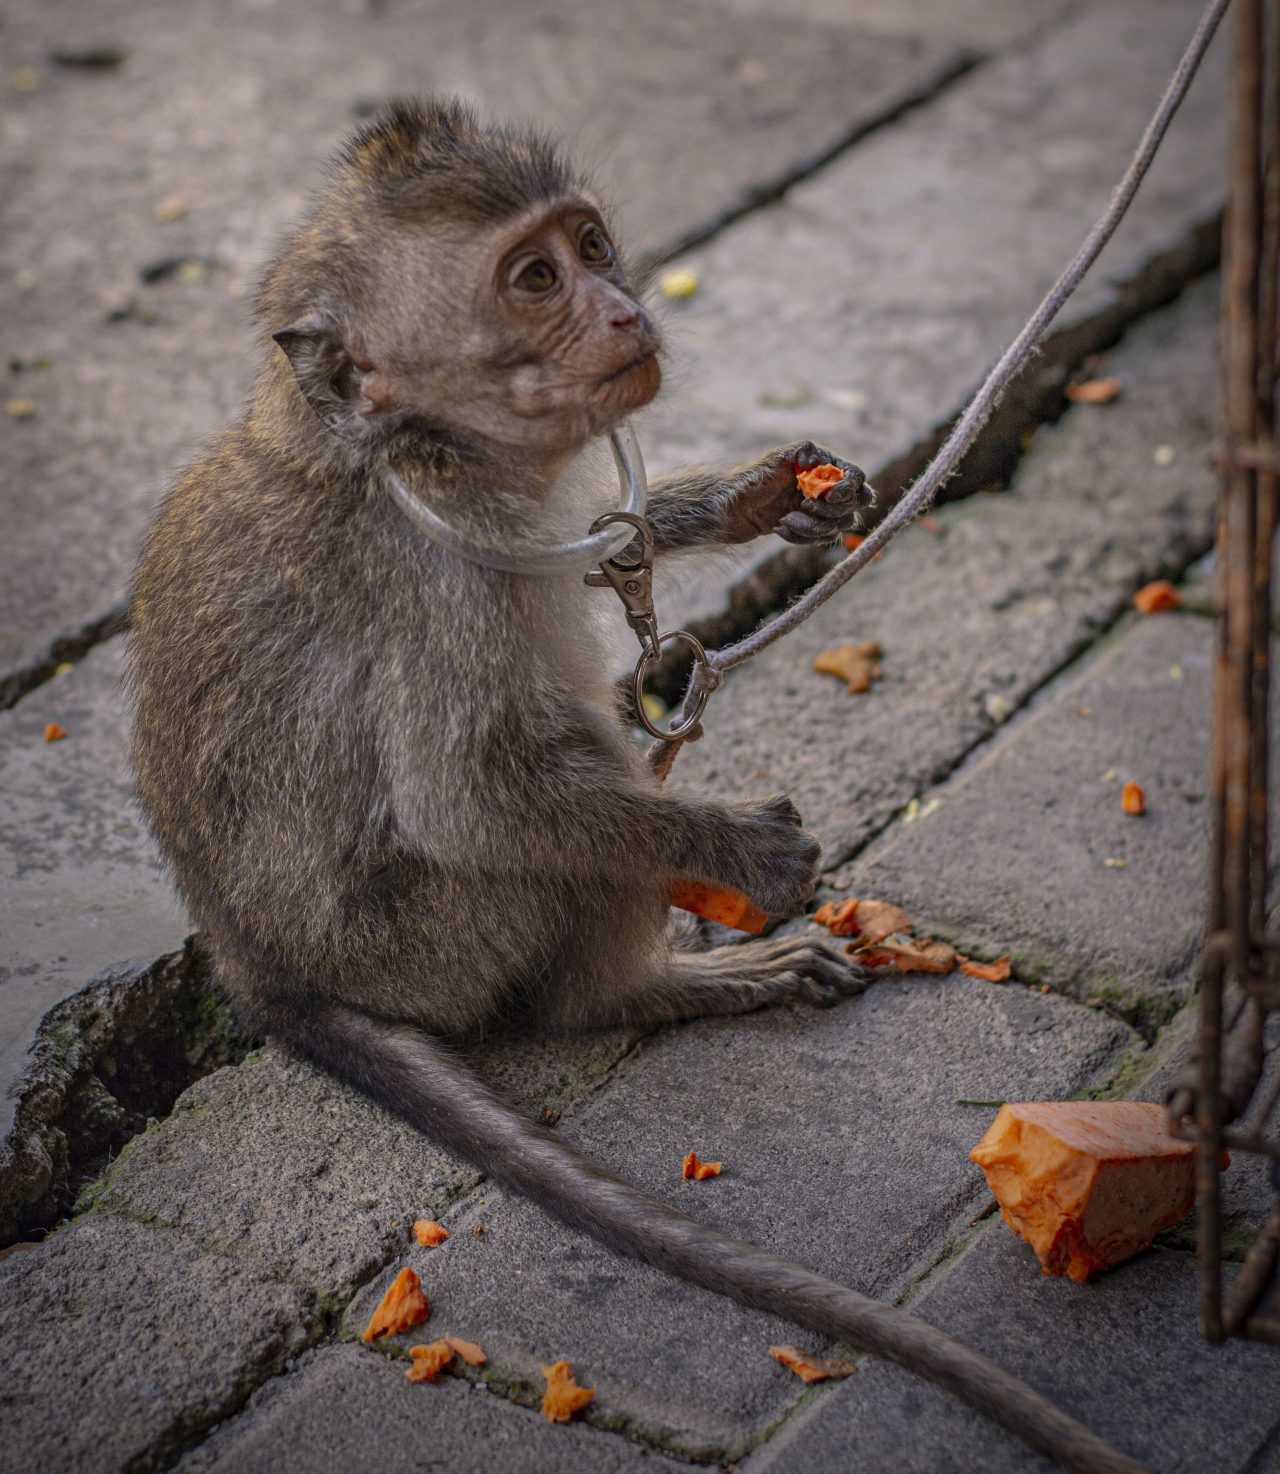 Seekor anak monyet ekor panjang yang diikat oleh tali. | Foto: Animal Friends Jogja/Action for Primates melalui Sarah Kite.